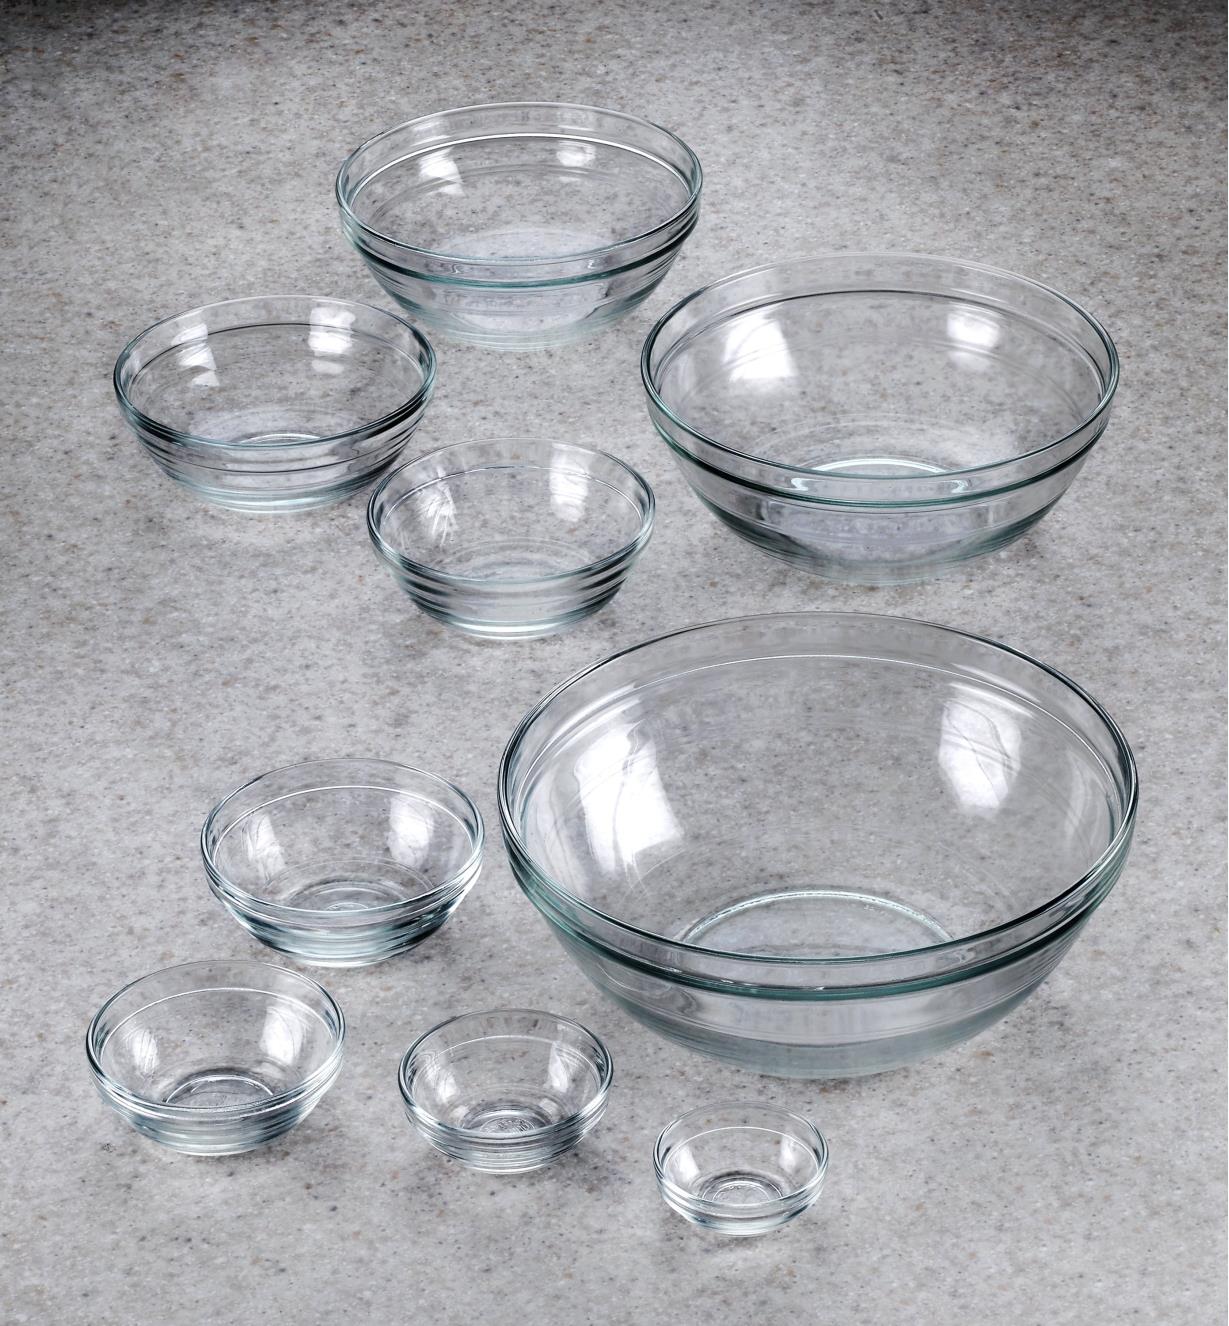 99W8213-duralex-glass-bowls-set-of-9-d-5009.jpg